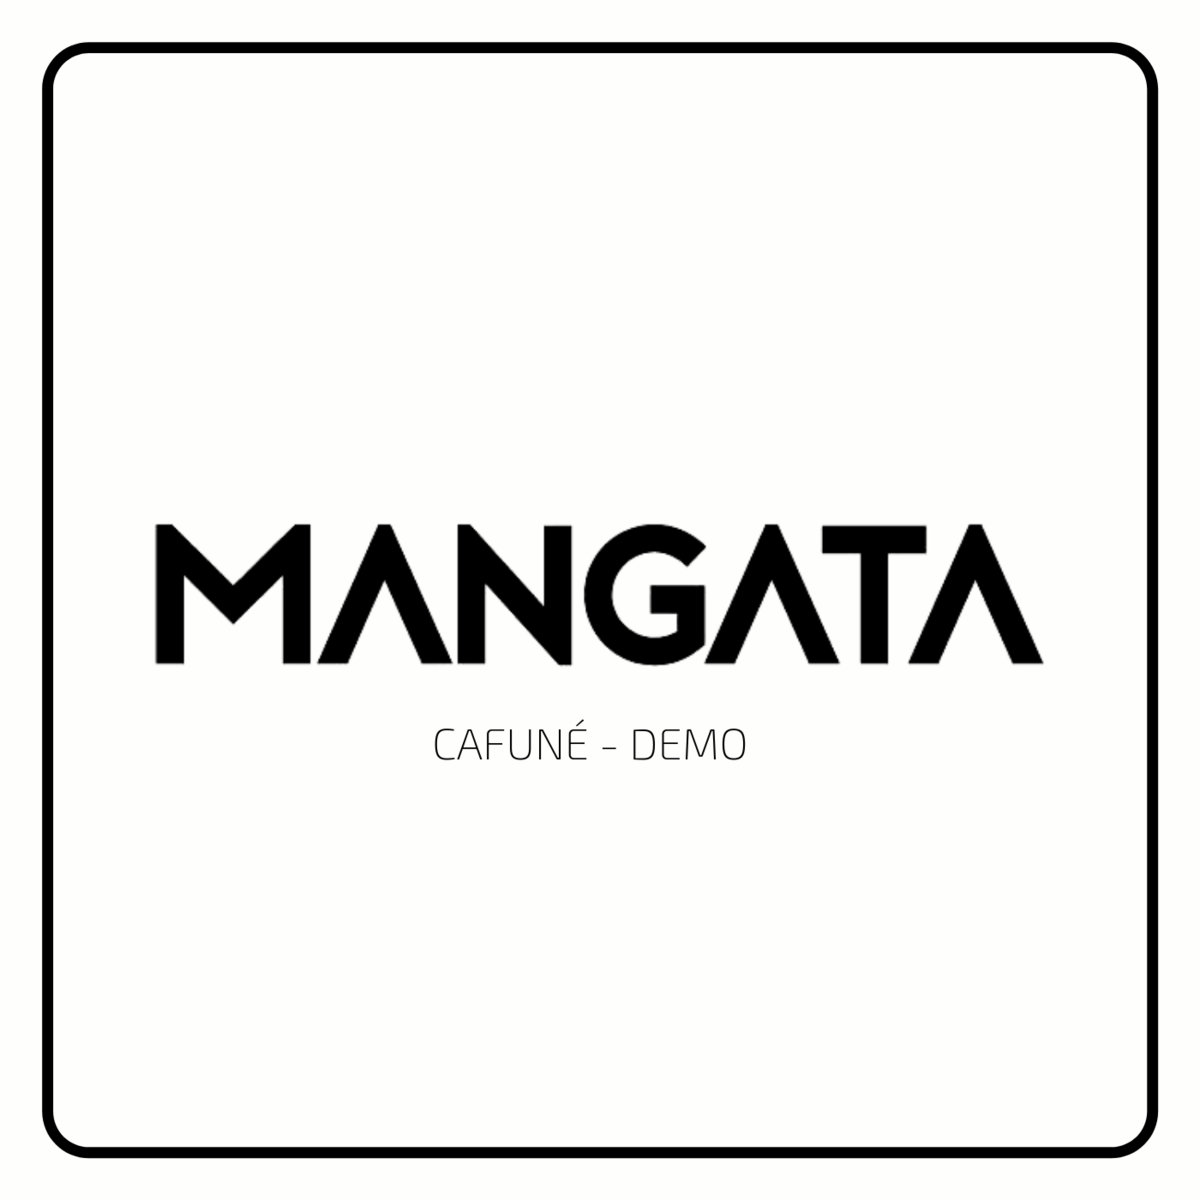 Cafuné (Demo 2018) by Mangata